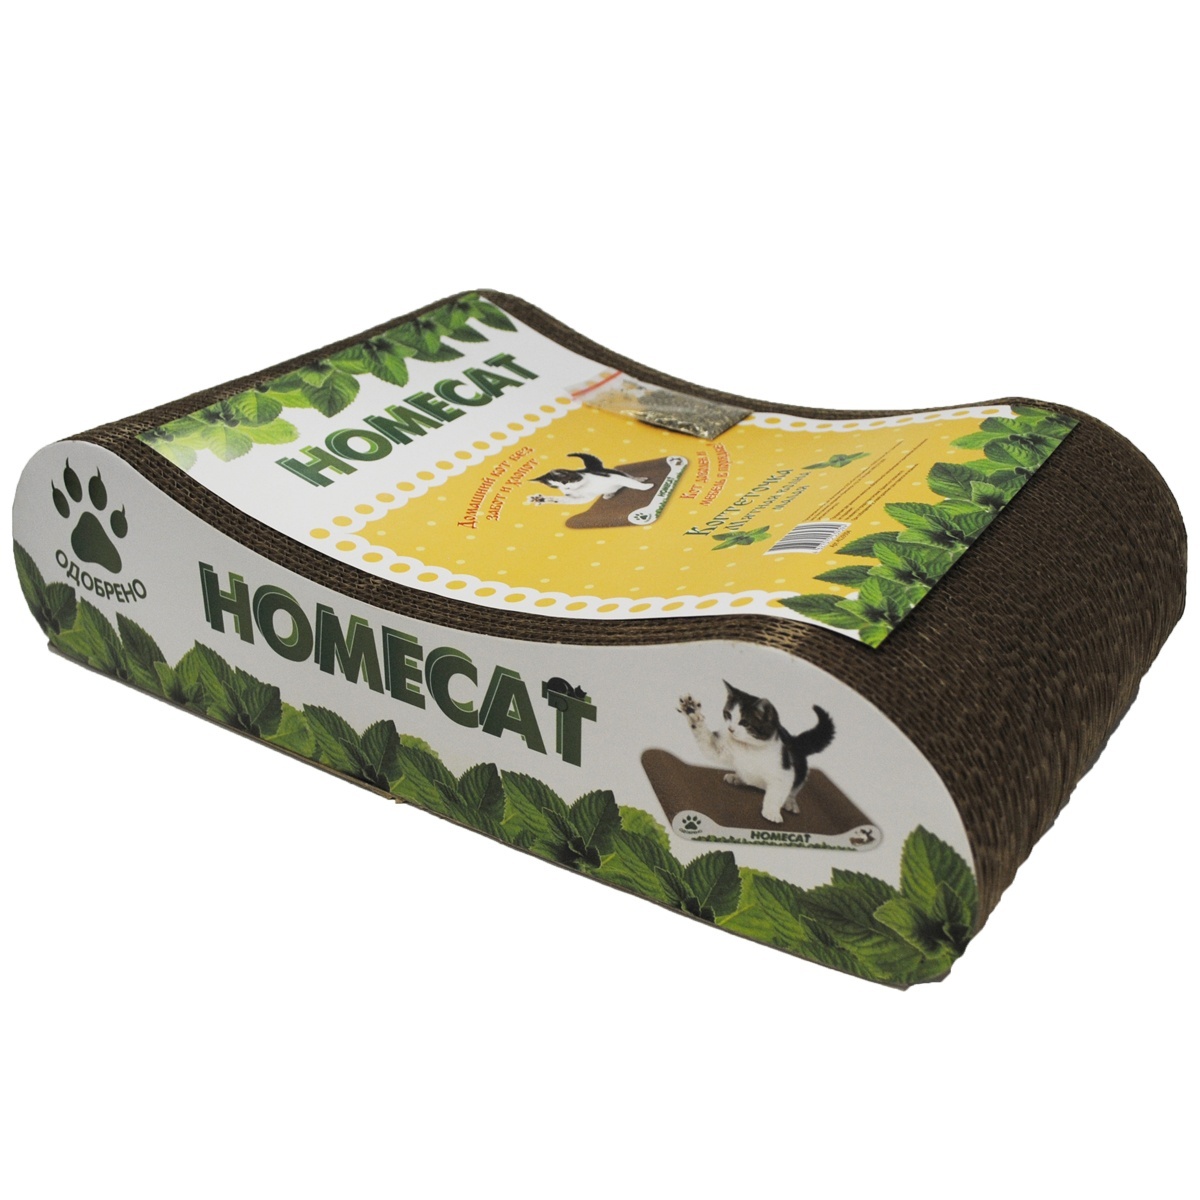 Homecat Homecat когтеточкаМятная волна, гофрокартон, 41х24х10 см (500 г) homecat мятная волна когтеточка малая гофрокартон 41х24х10 см